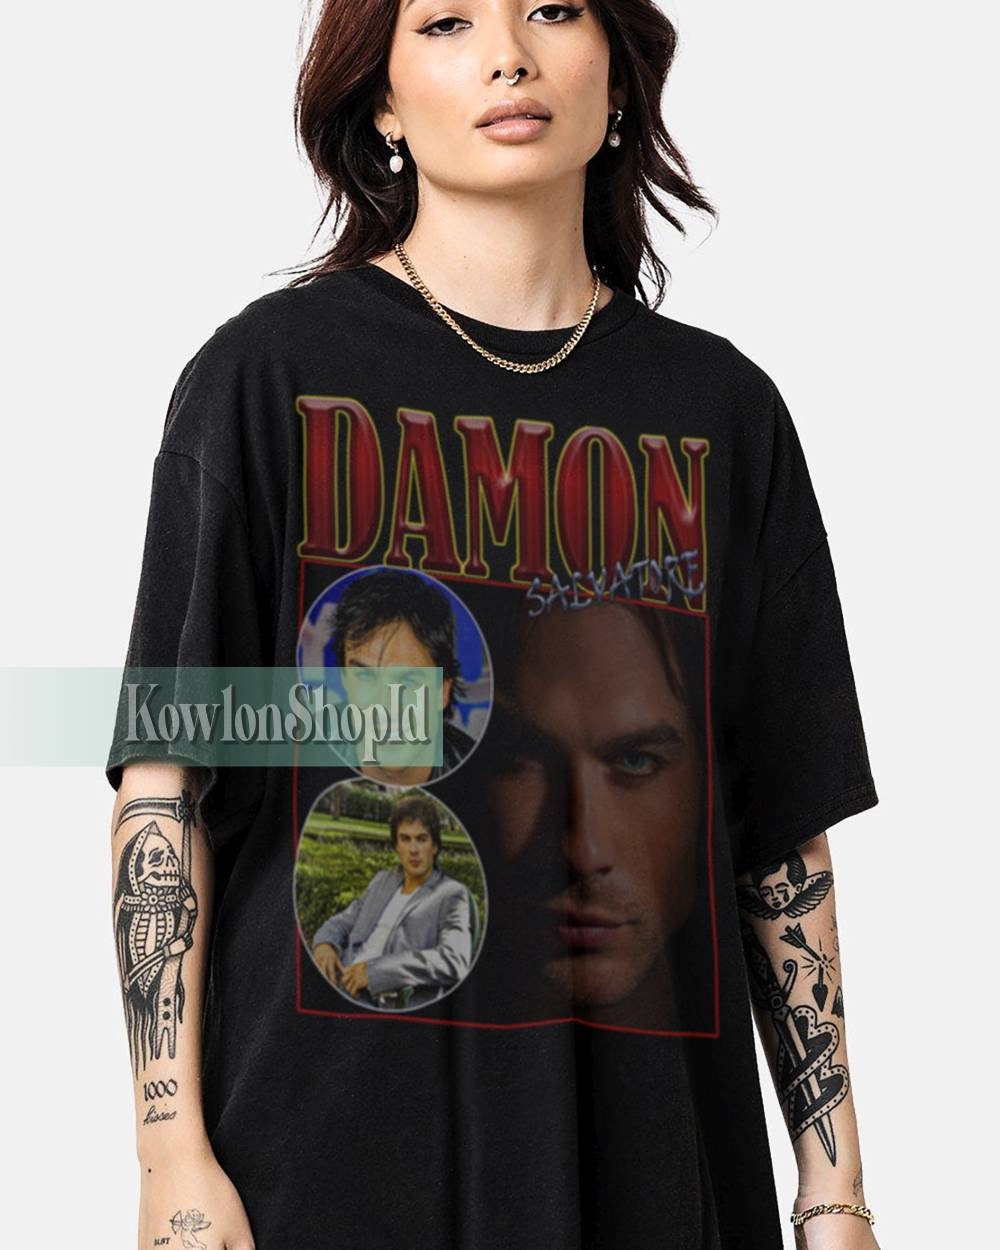 Discover DAMON SALVATORE Shirt, Damon Salvatore Vampire Tshirt, Damon Salvatore 90s Shirt